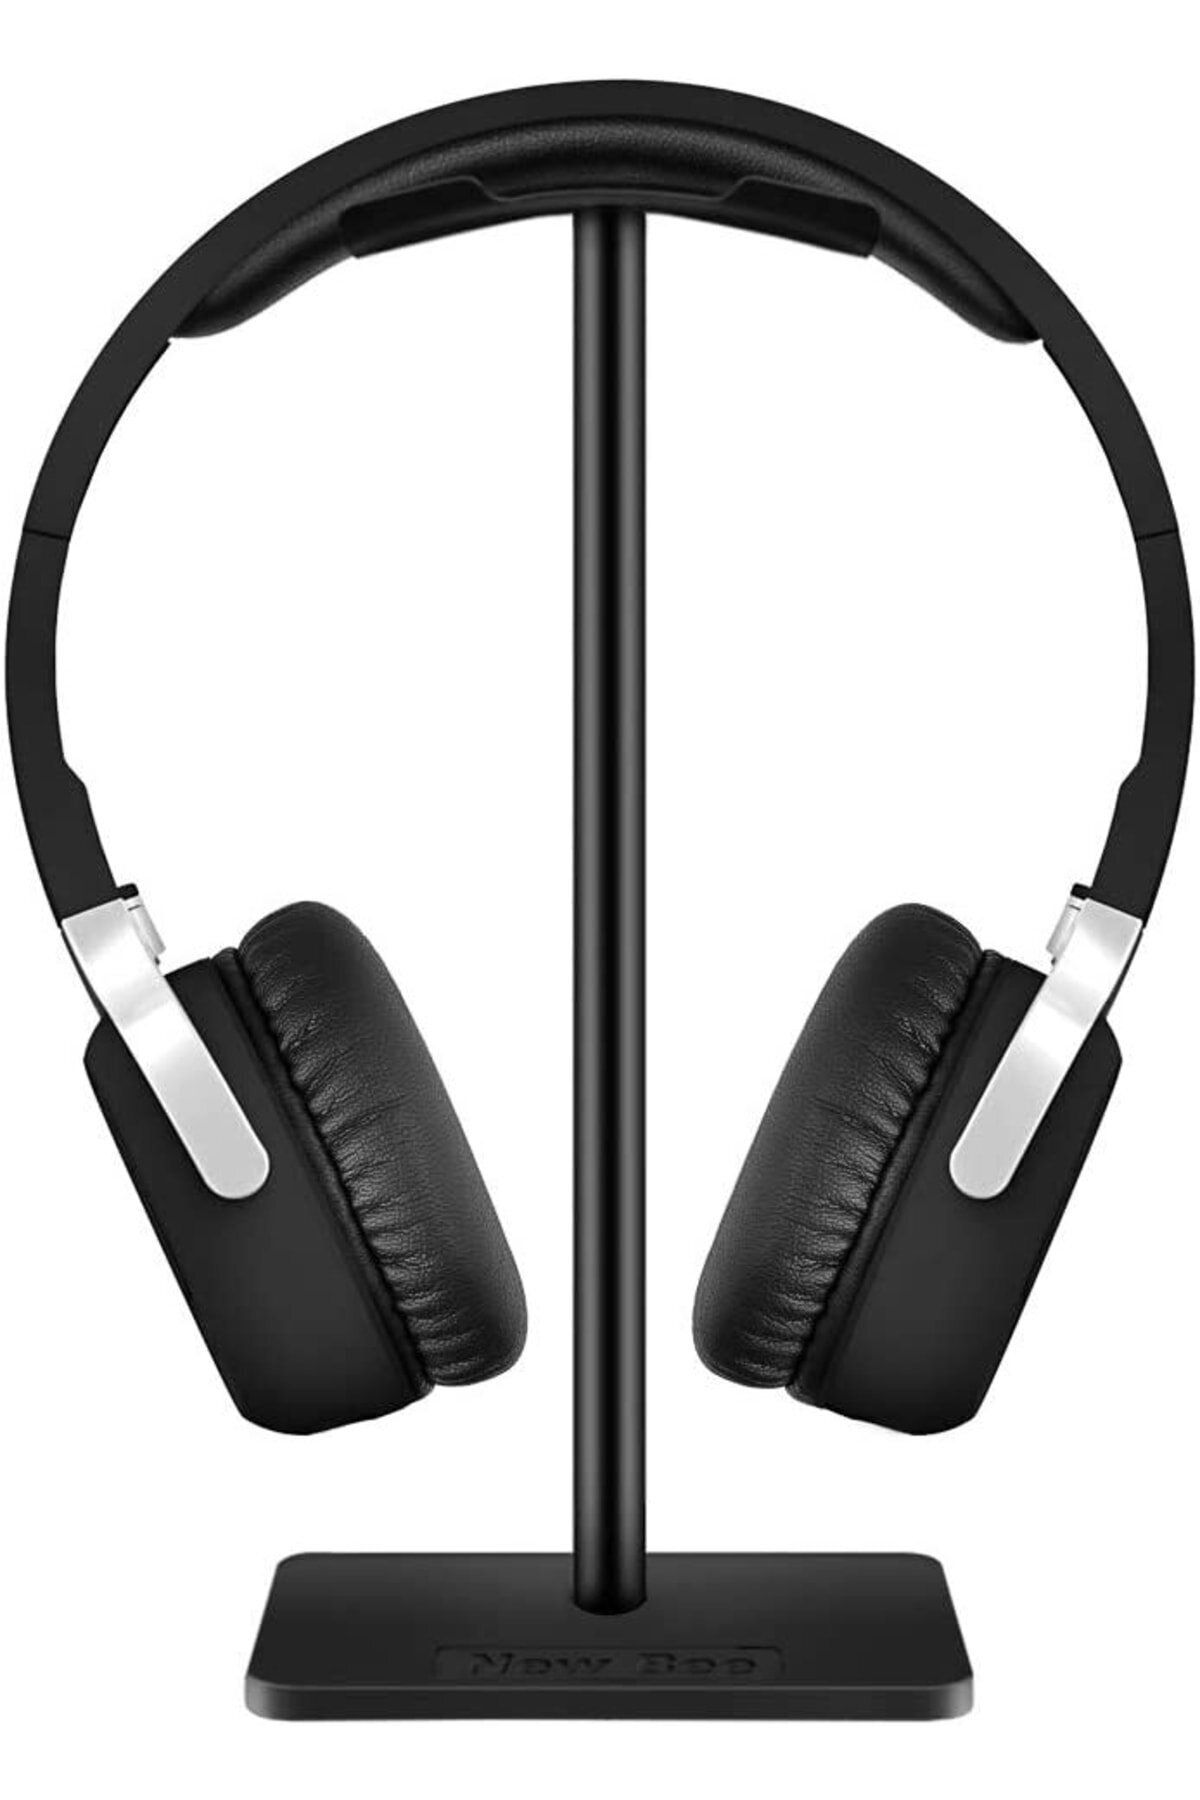 LESGO Oyuncu Kulaklık Standı -gamer Headset Stand ( Kulaklık Dahil Değildir)